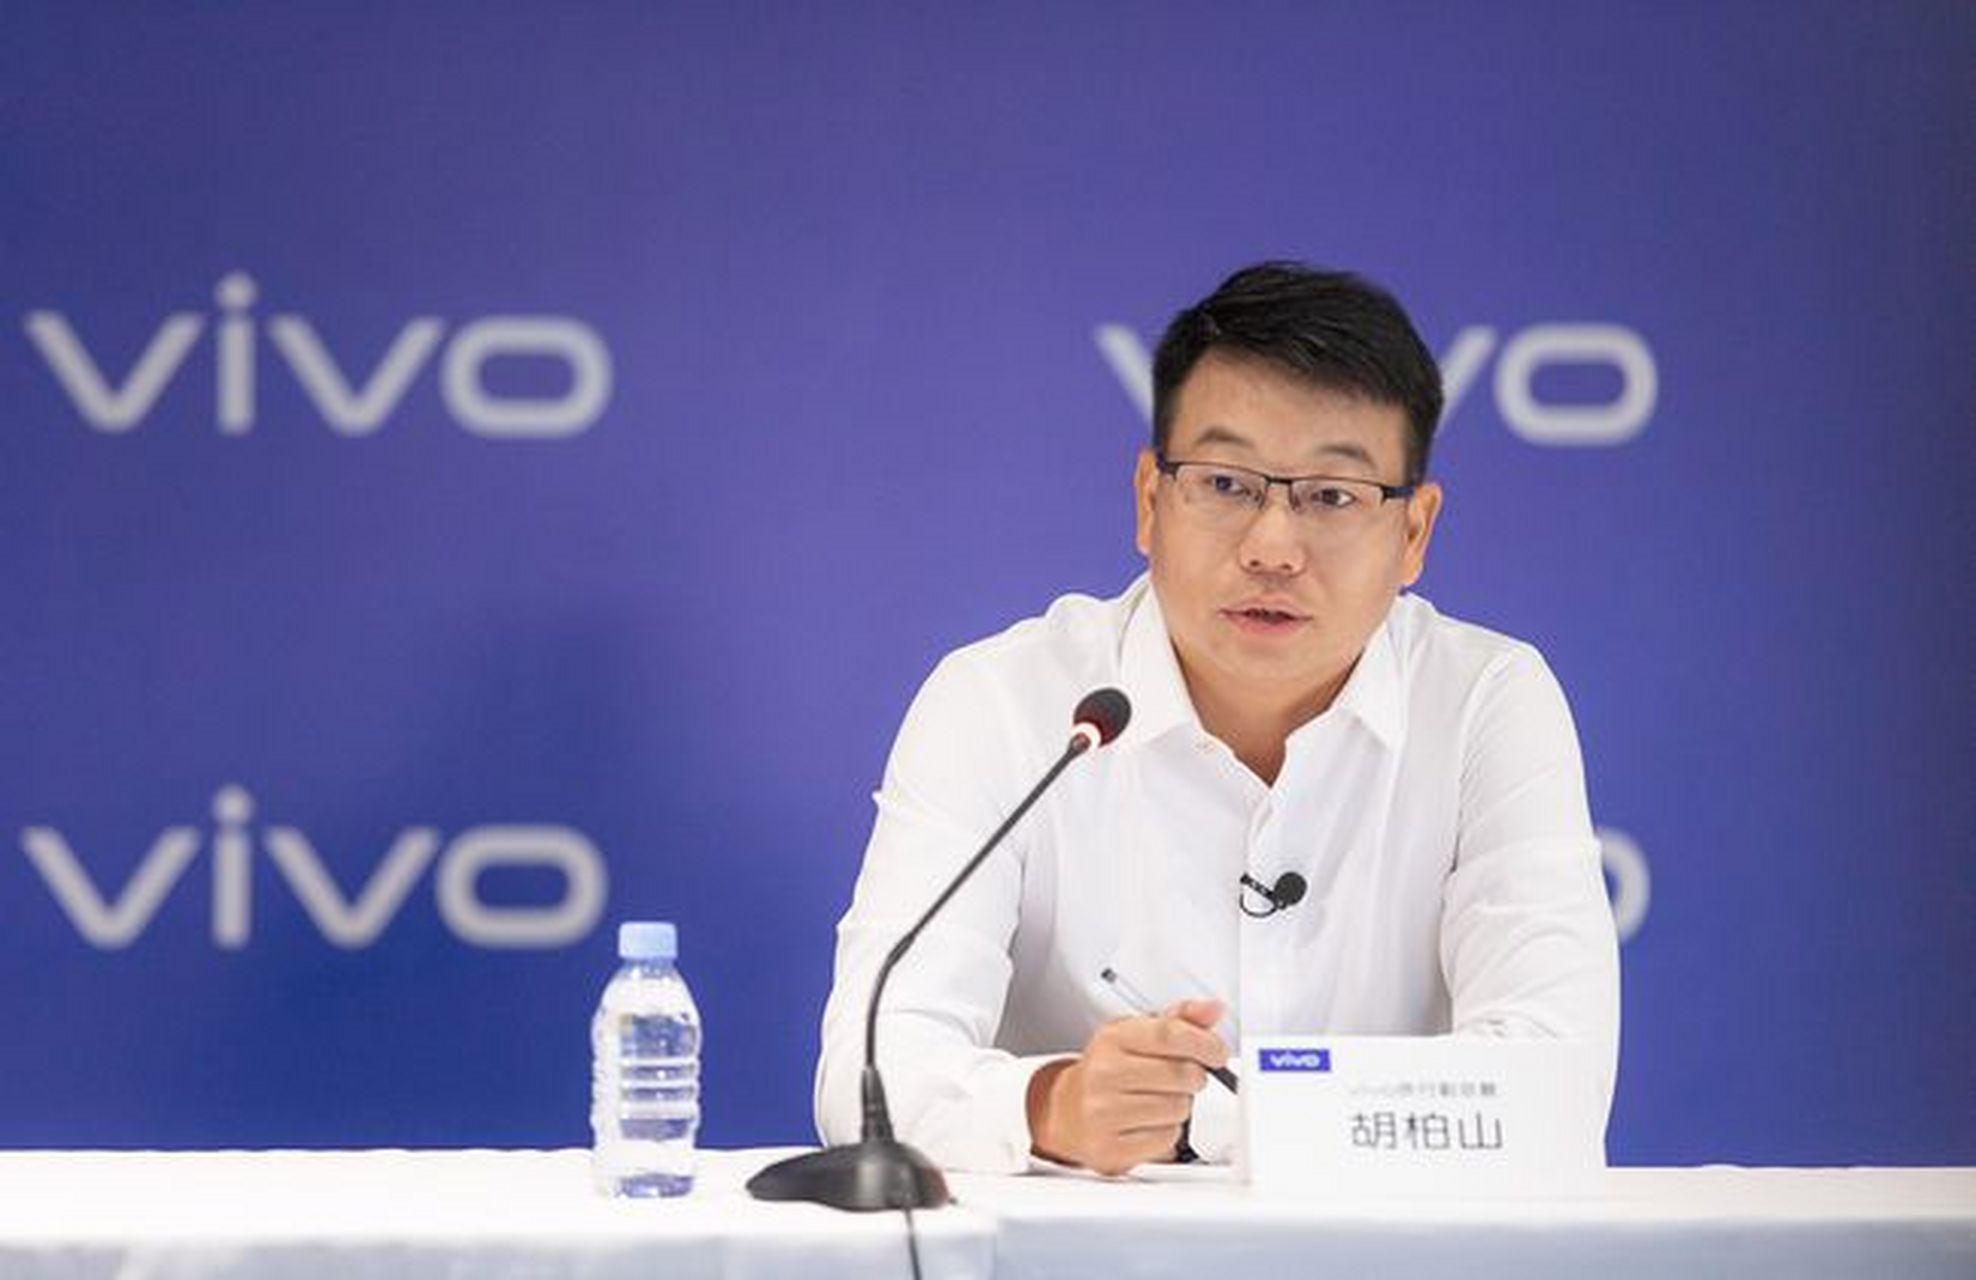 vivo# vivo执行副总裁胡柏山宣布,vivo首颗自研影像芯片命名为"v1"